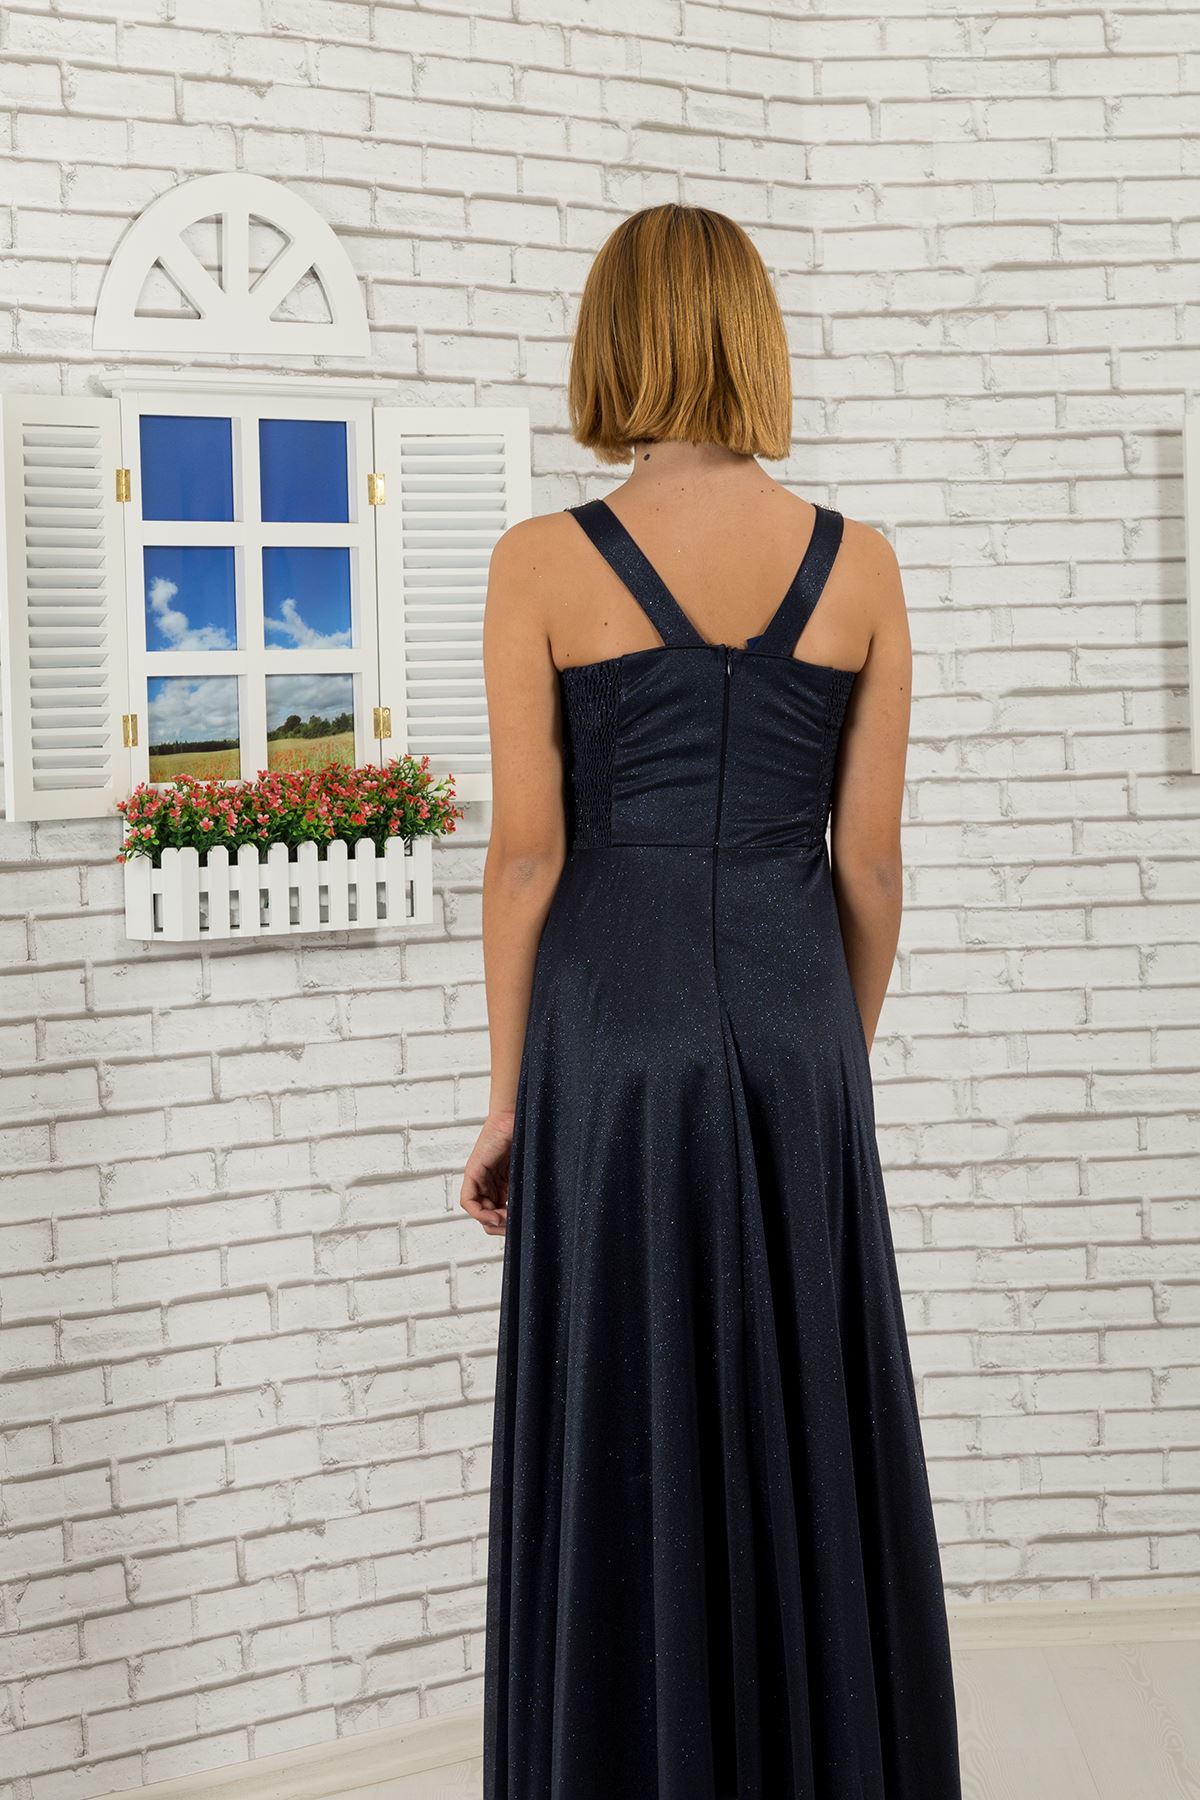 Талия с камнями, воротник подробно, серебристый шифон для девочек вечернее платье 473 темно-синий